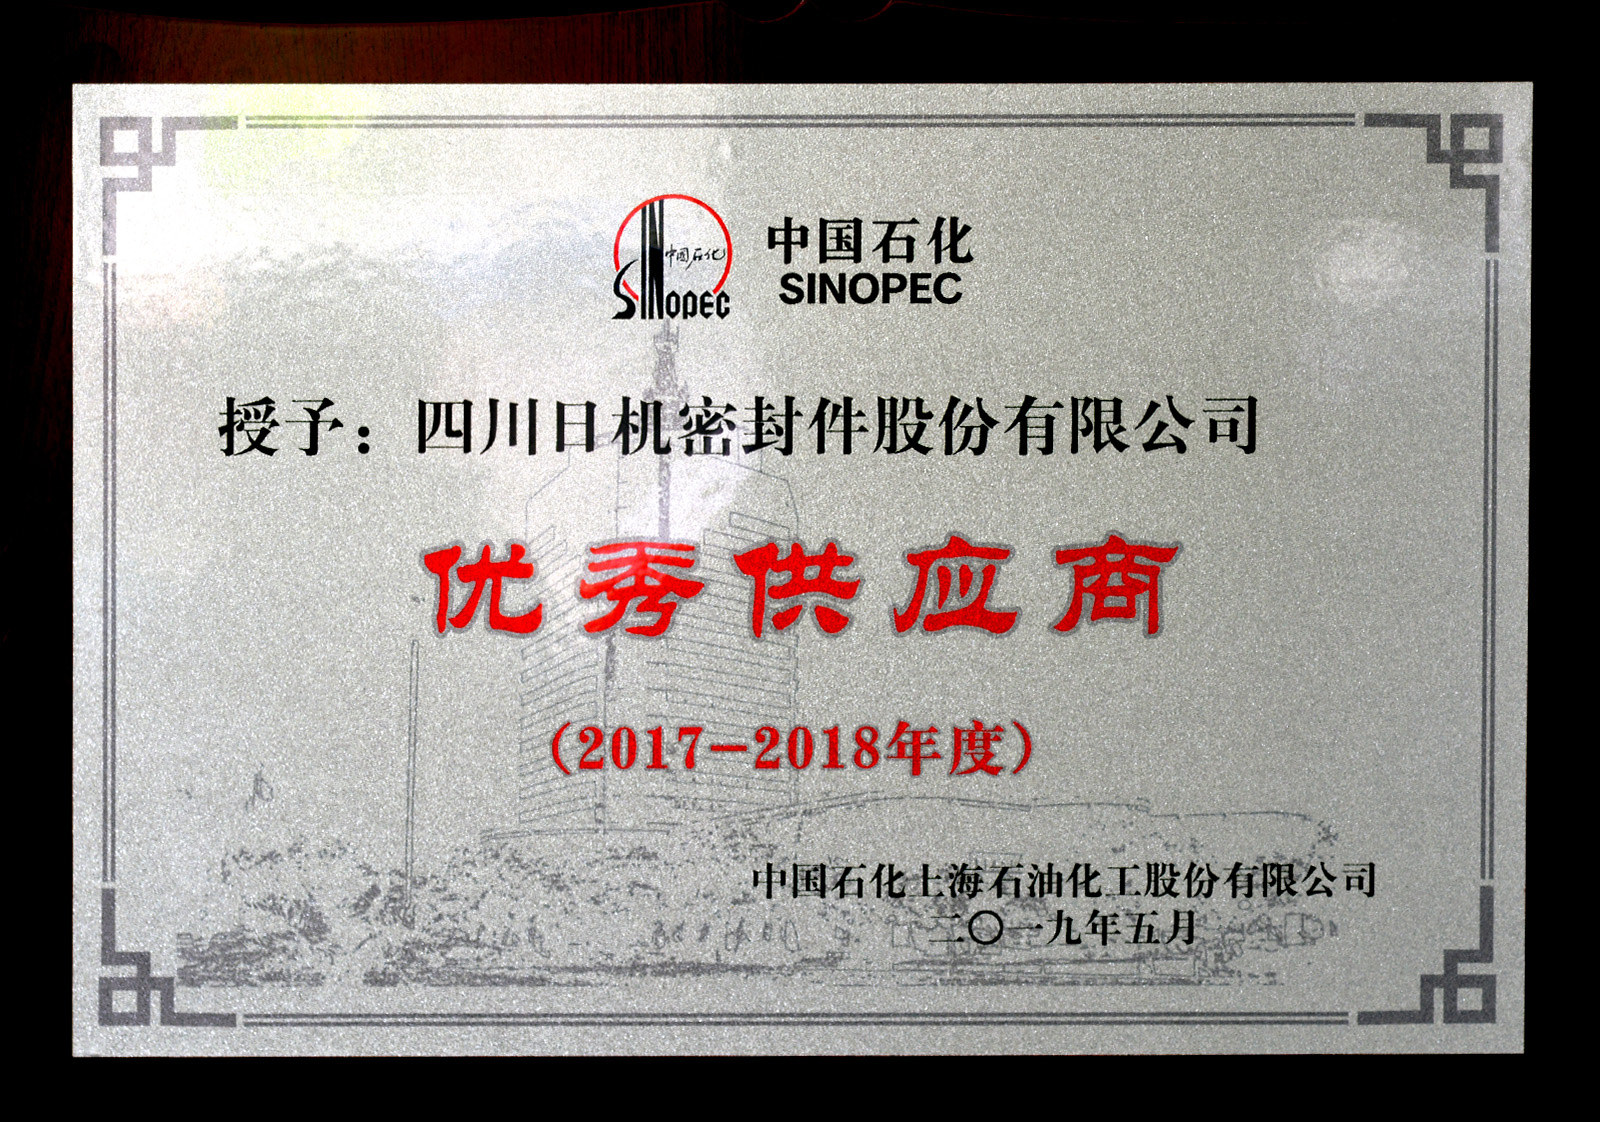 中石化上海石化2017-2018年度优秀供应商